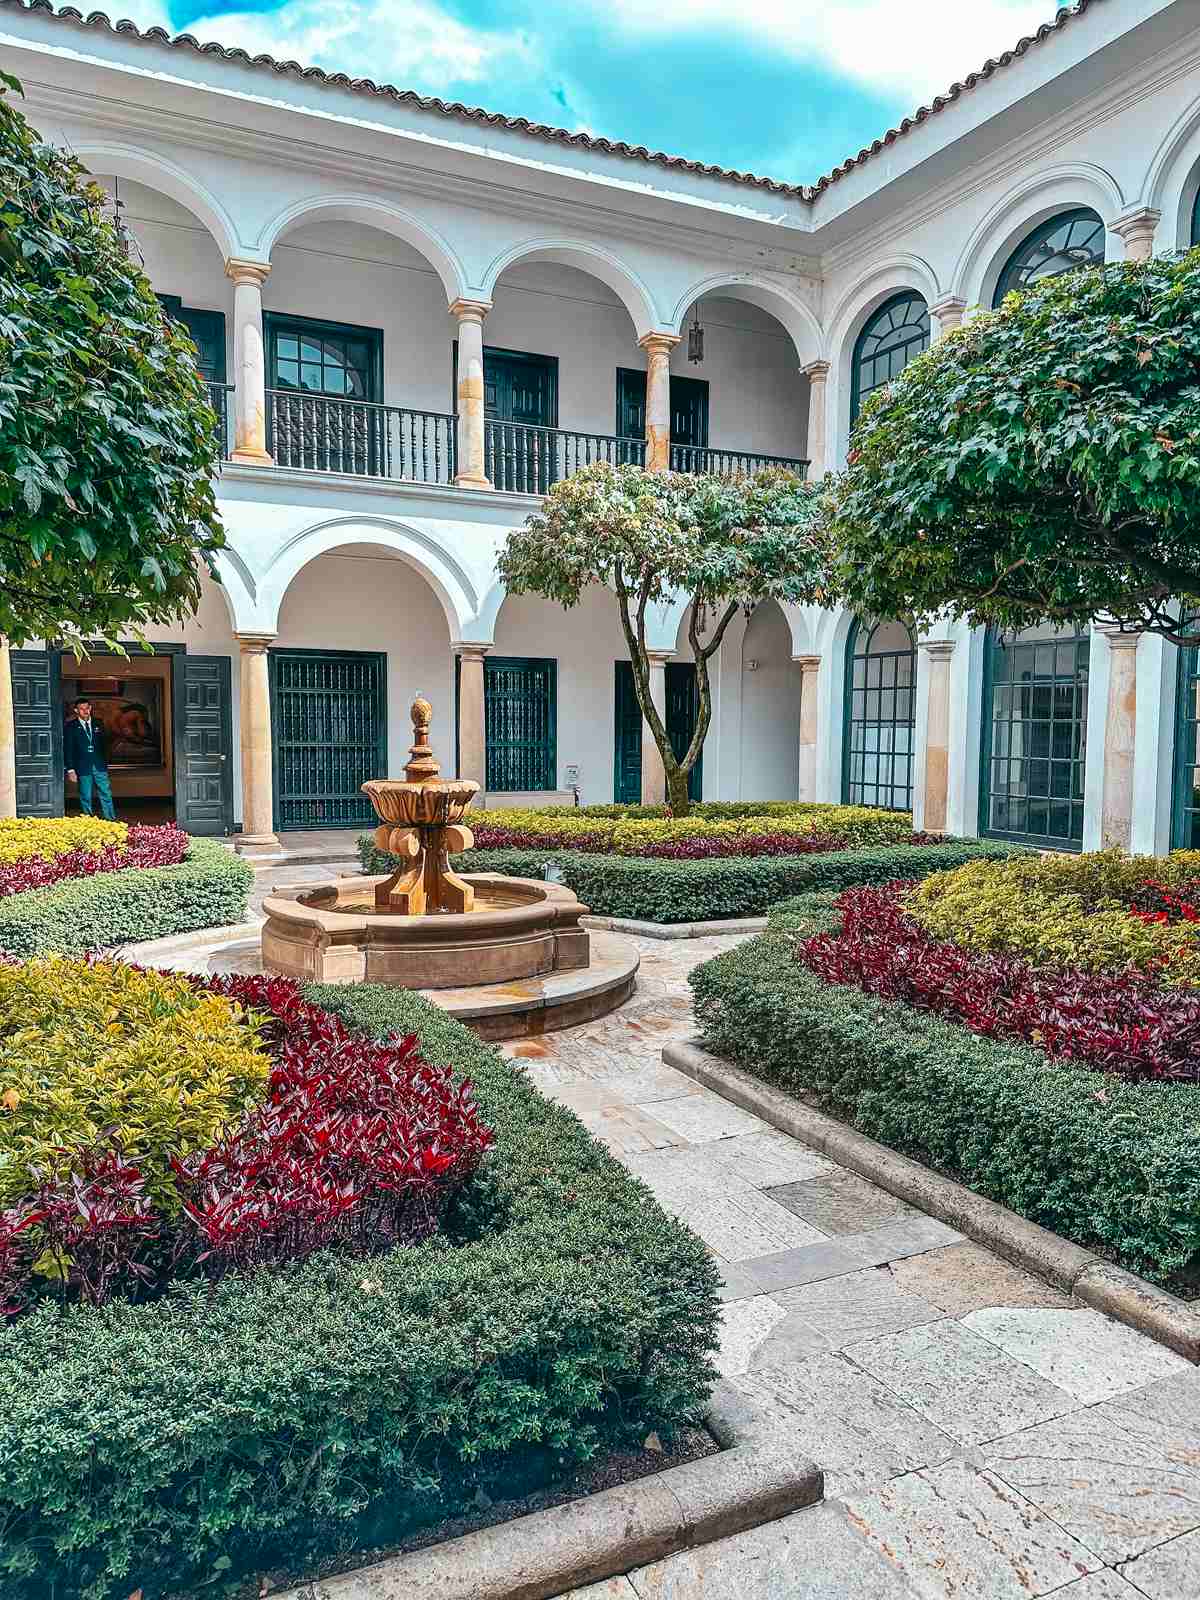 Botero Museum garden in Bogota